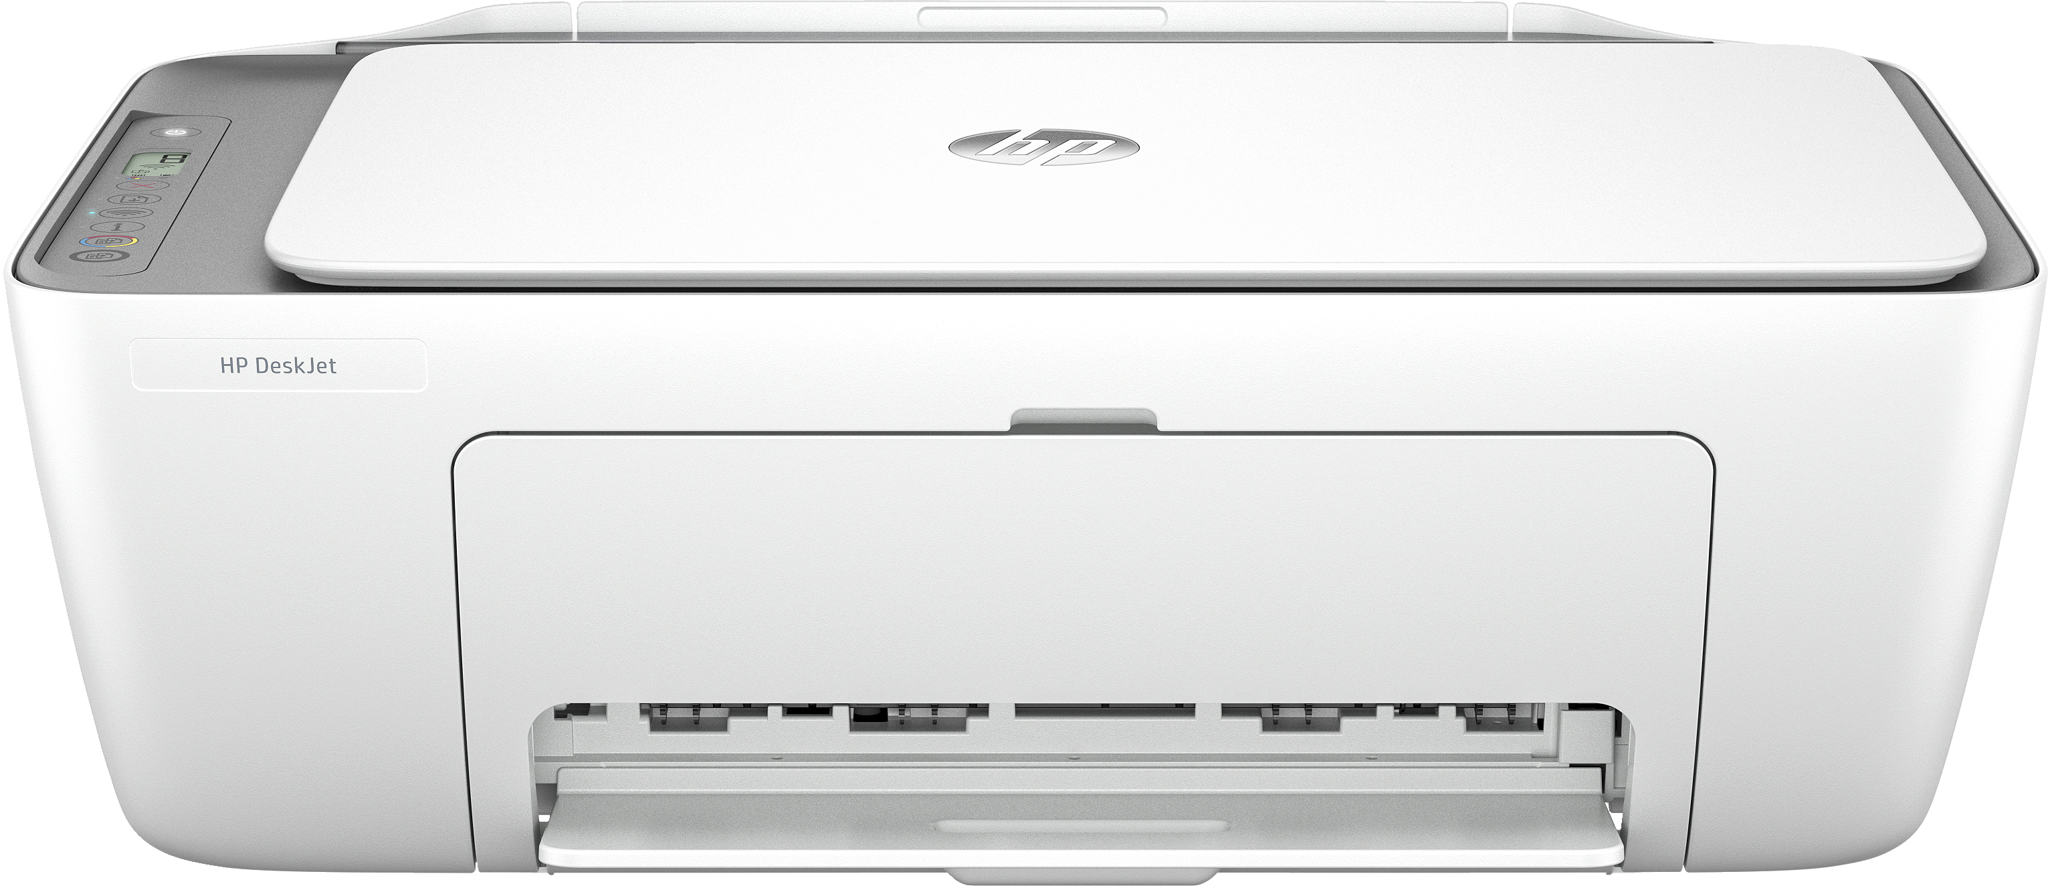 Bild von HP DeskJet 2820e All-in-One-Drucker - Farbe - Drucker für Zu Hause - Drucken - Kopieren - Scannen - Scannen an PDF - Thermal Inkjet - Farbdruck - 4800 x 1200 DPI - Farbkopieren - A4 - Silber - Weiß